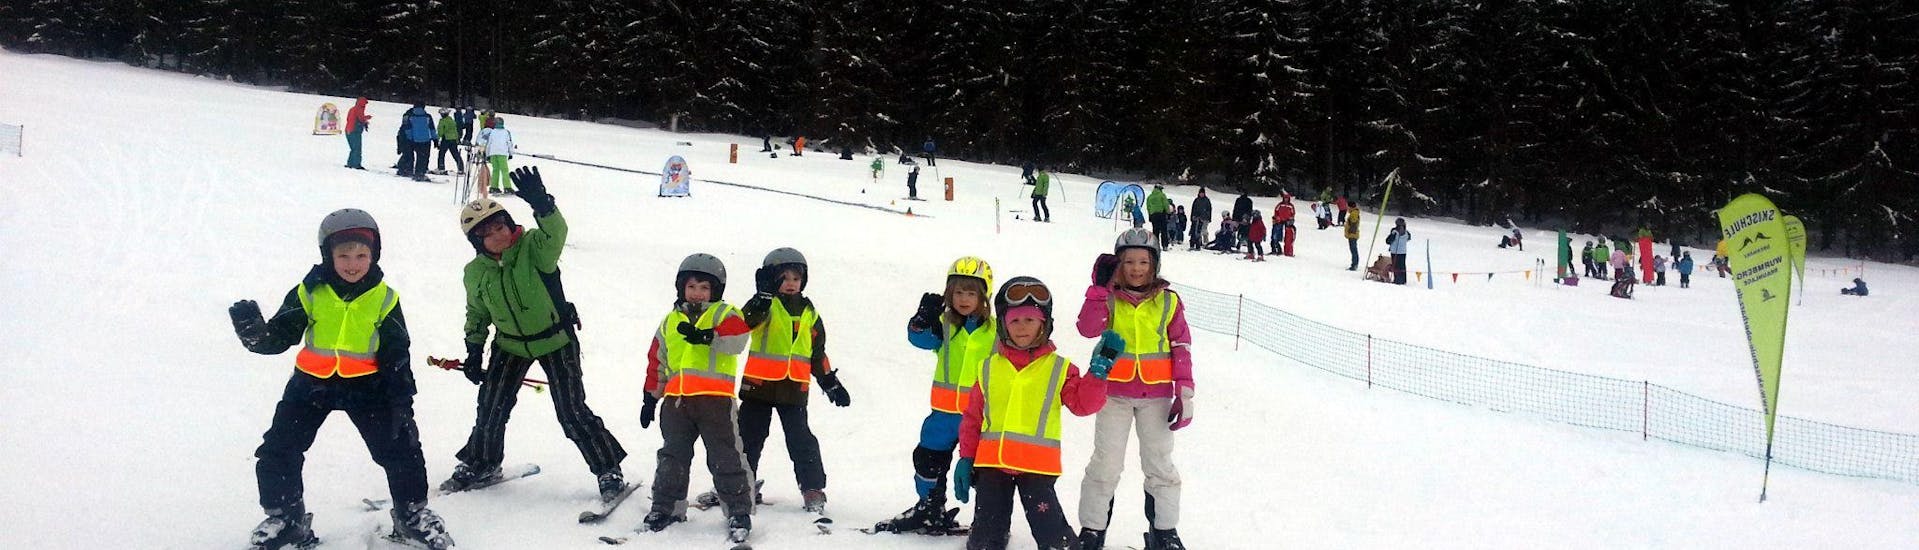 Clases de esquí para niños a partir de 11 años con experiencia.